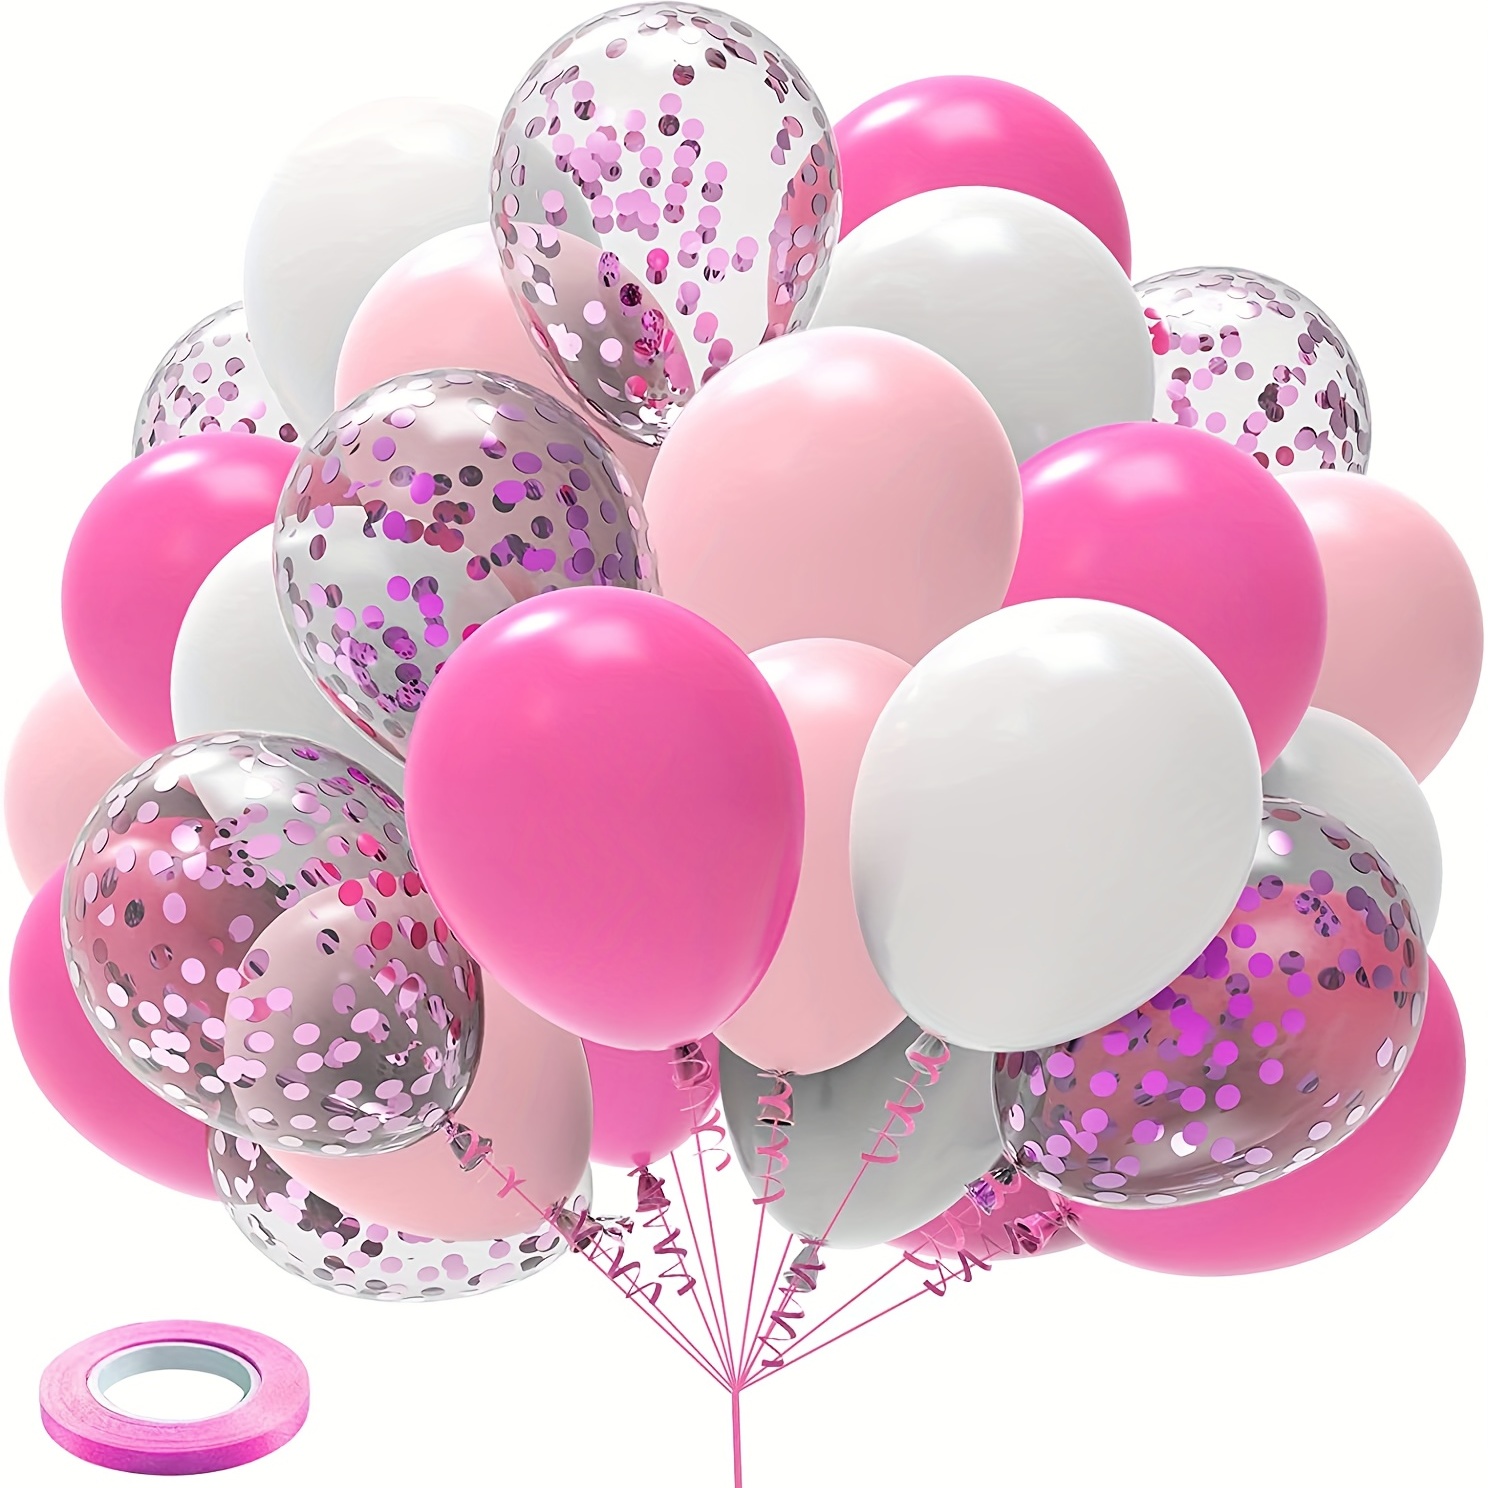 Paquete de 100 globos de látex rosa intenso y rosa claro de 12 pulgadas  para el día de San Valentín, niñas, mujeres, cumpleaños, baby shower